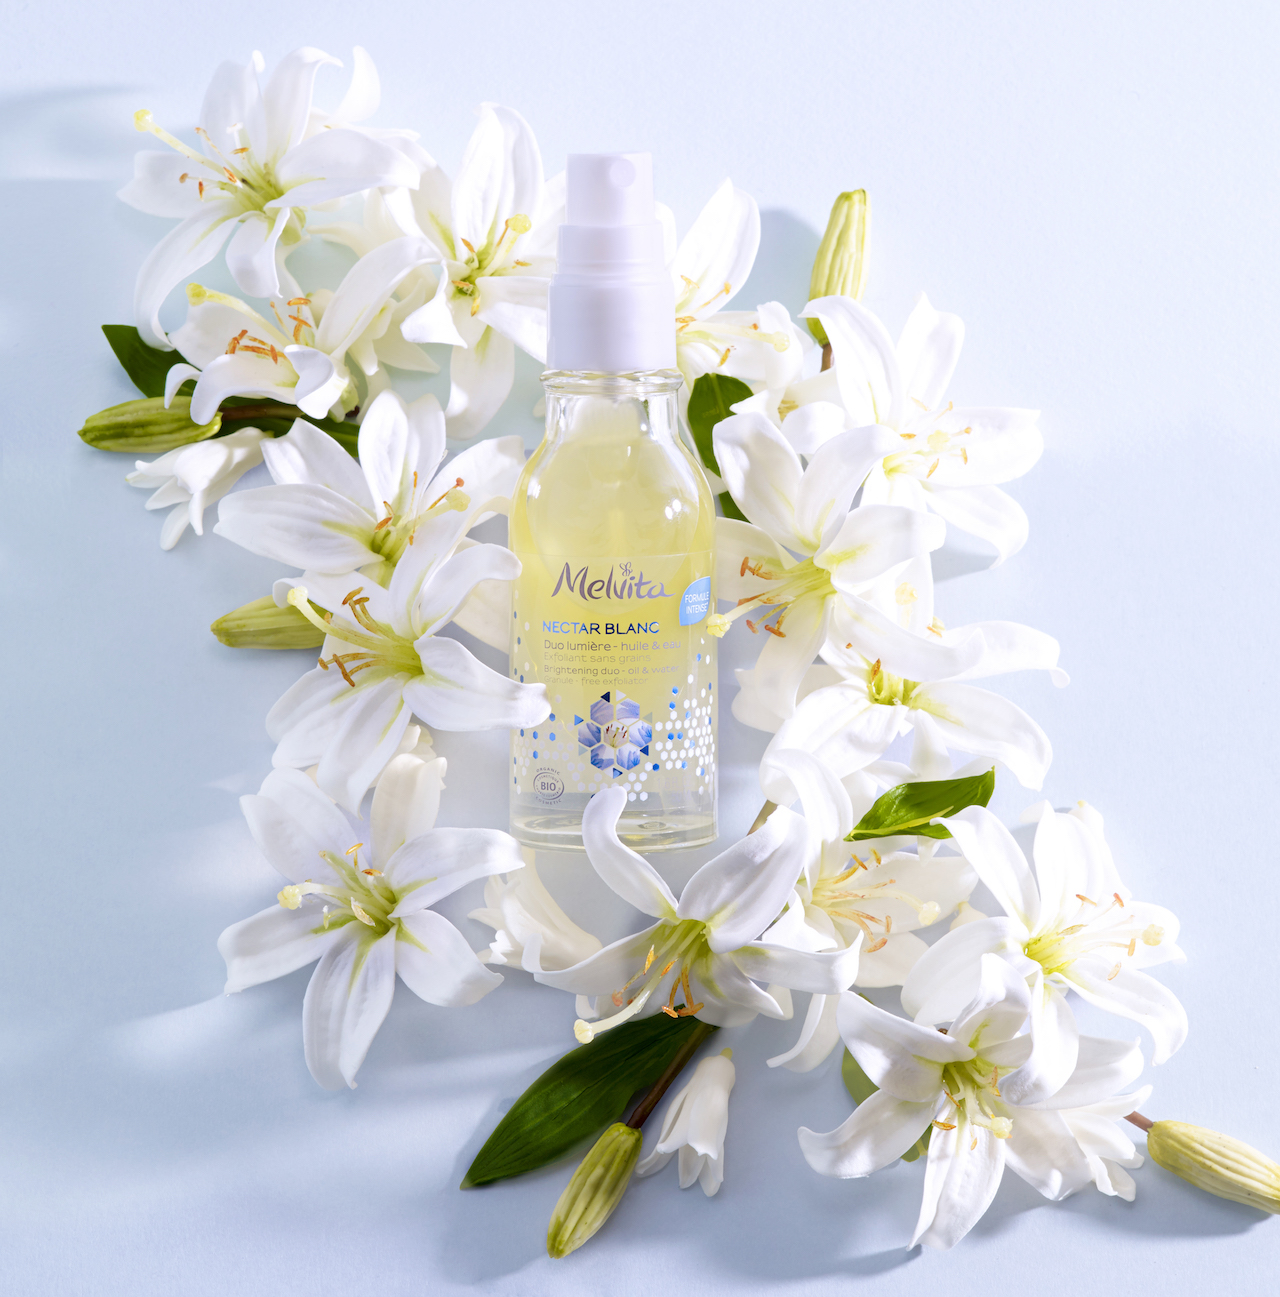 Melvita's NEW Organic Nectar Blanc Brightening Duo